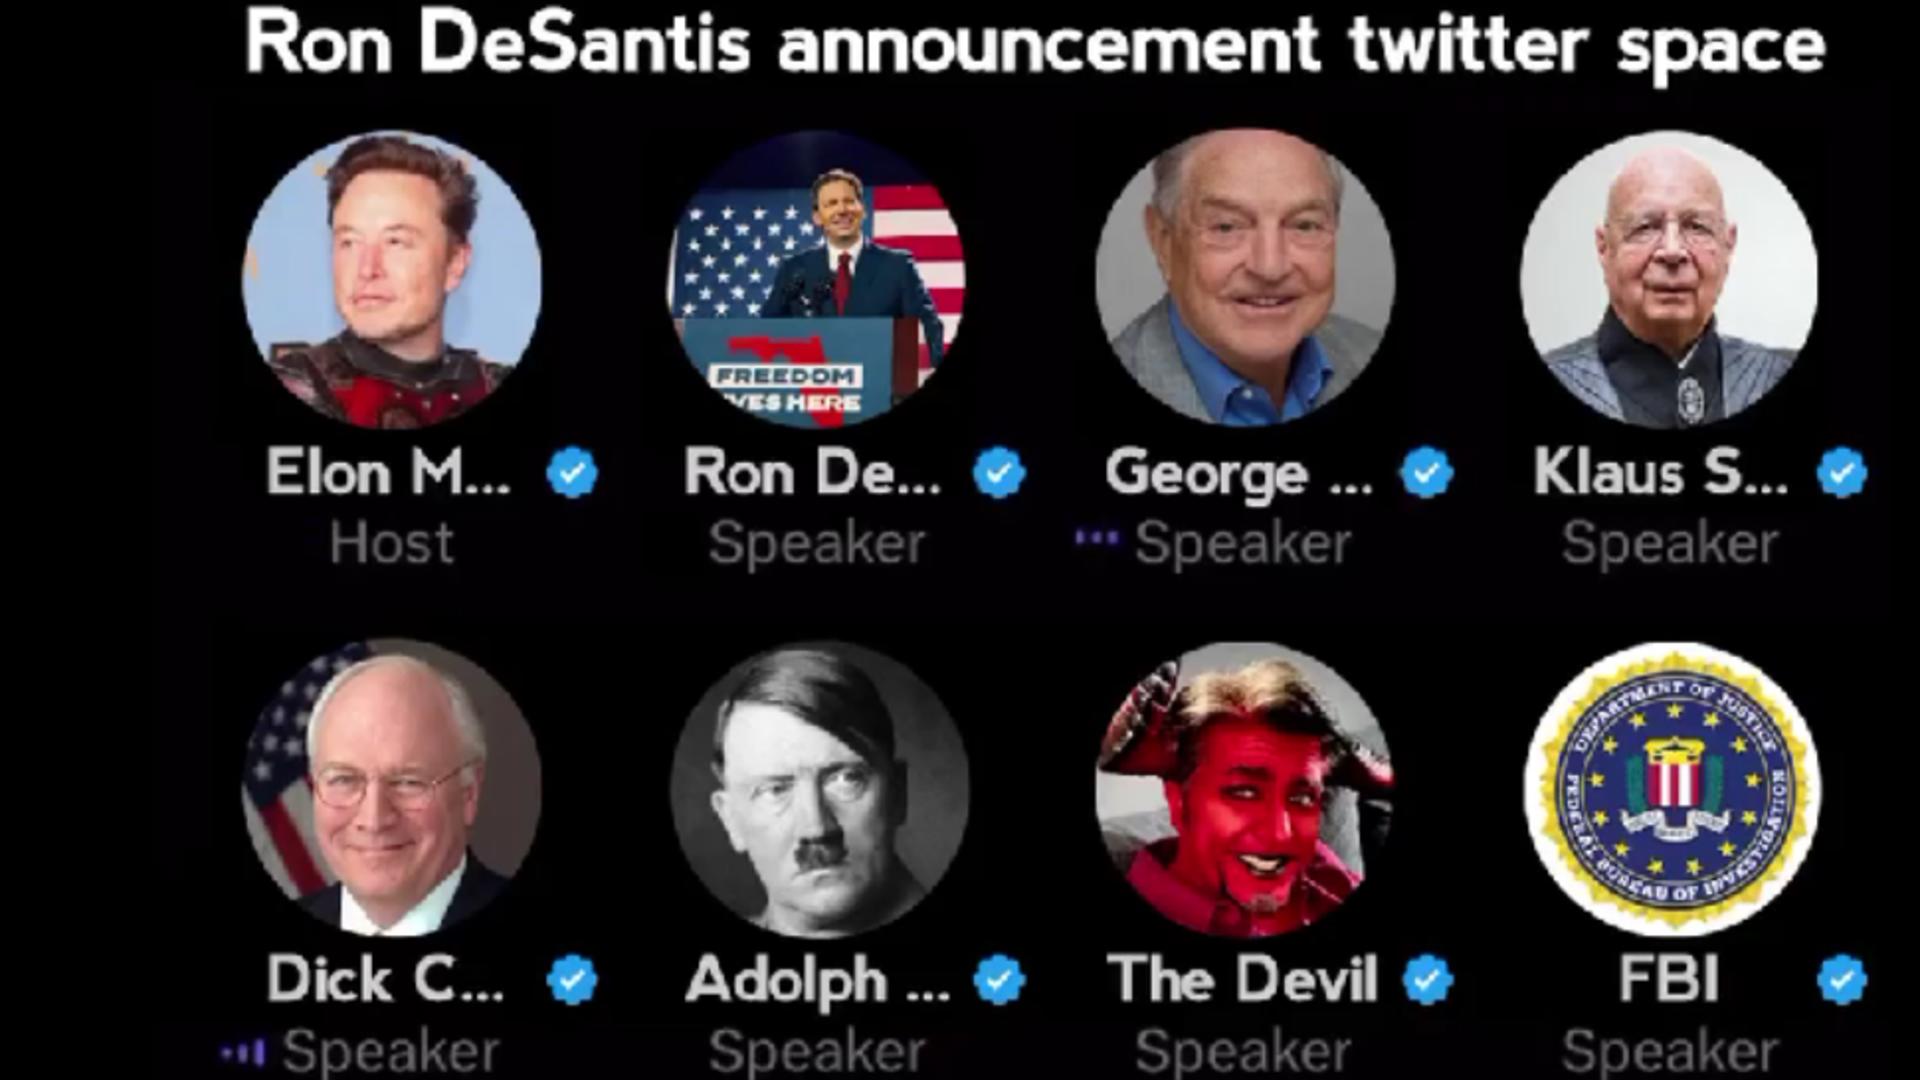 Trump își ironizează rivalul printr-un videoclip trucat. Ron DeSantis, participant la o „întâlnire” cu Soroș, Hitler și însuși Diavolul